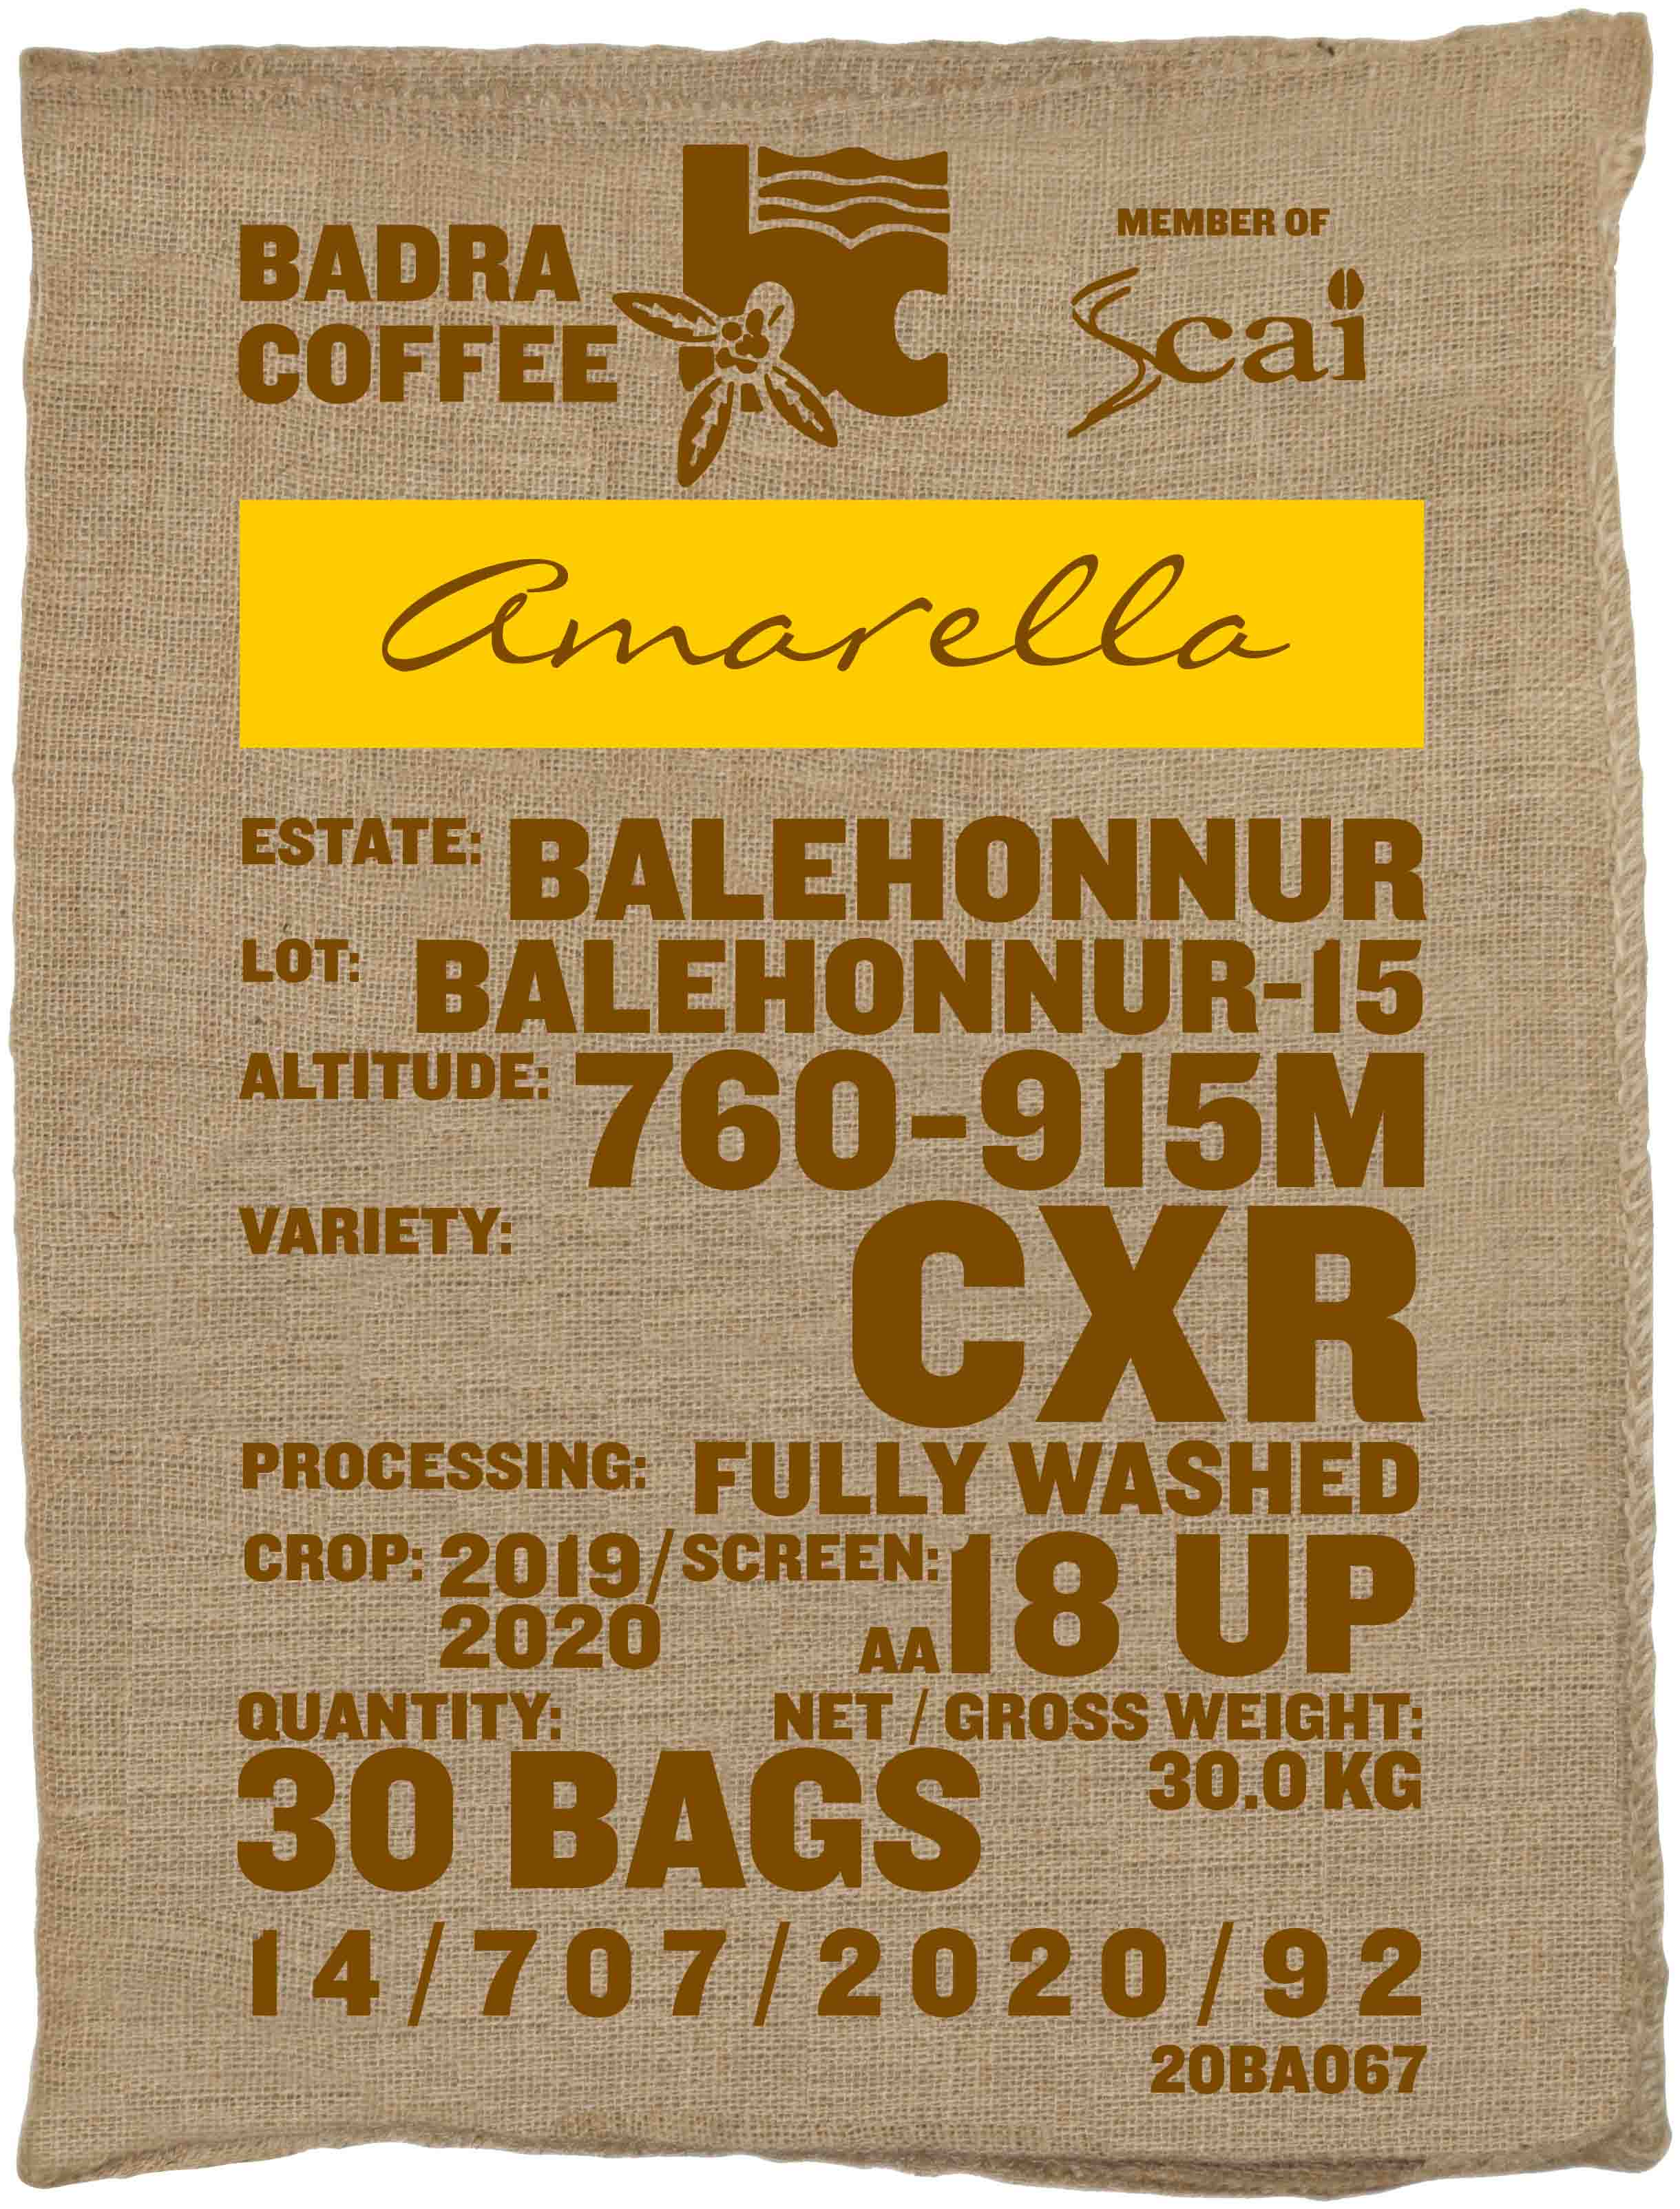 Ein Rohkaffeesack amarella Parzellenkaffee Varietät CxR. Badra Estates Lot Balehonnur 15.